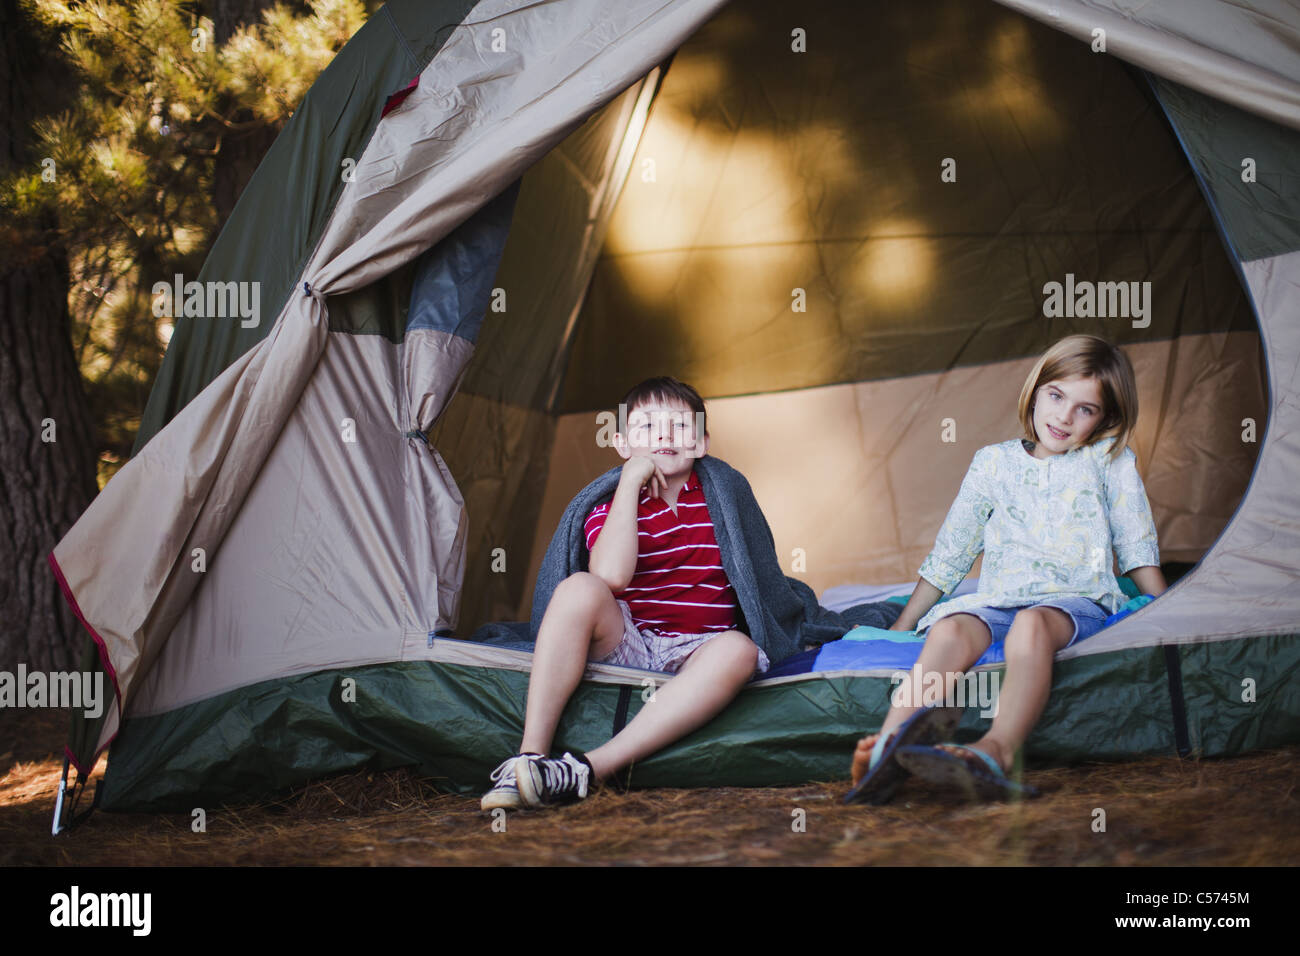 He is at camp. Девушка в палатке. Дети лежат в палатке. Палатки для девочек. Ребенок сидит в палатке дома.